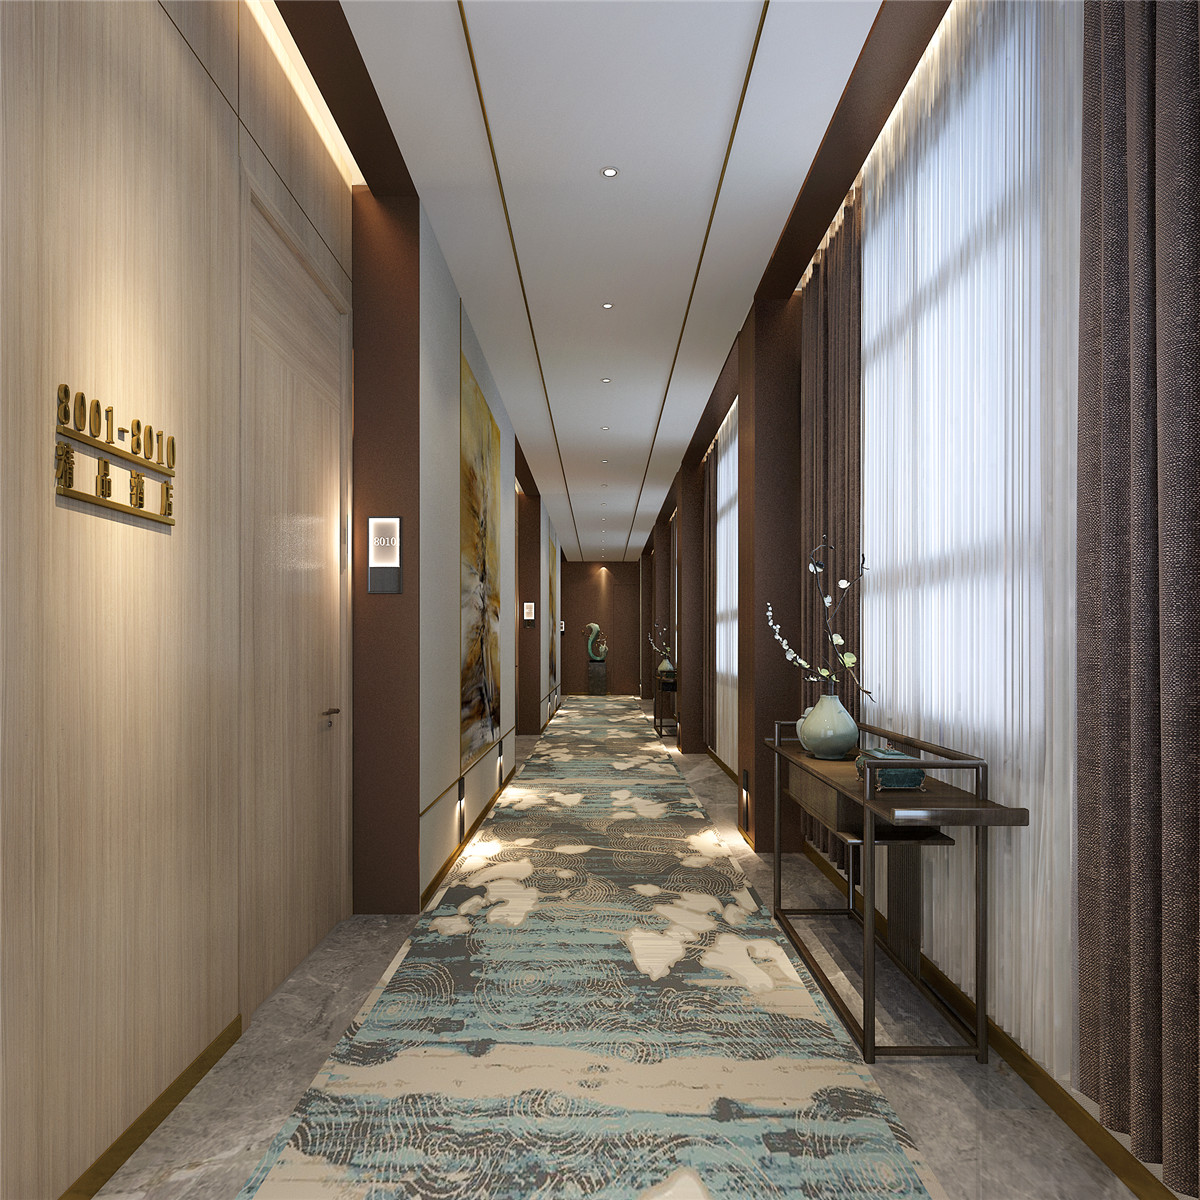 中式风格经济型宾馆装修效果图 – 设计本装修效果图